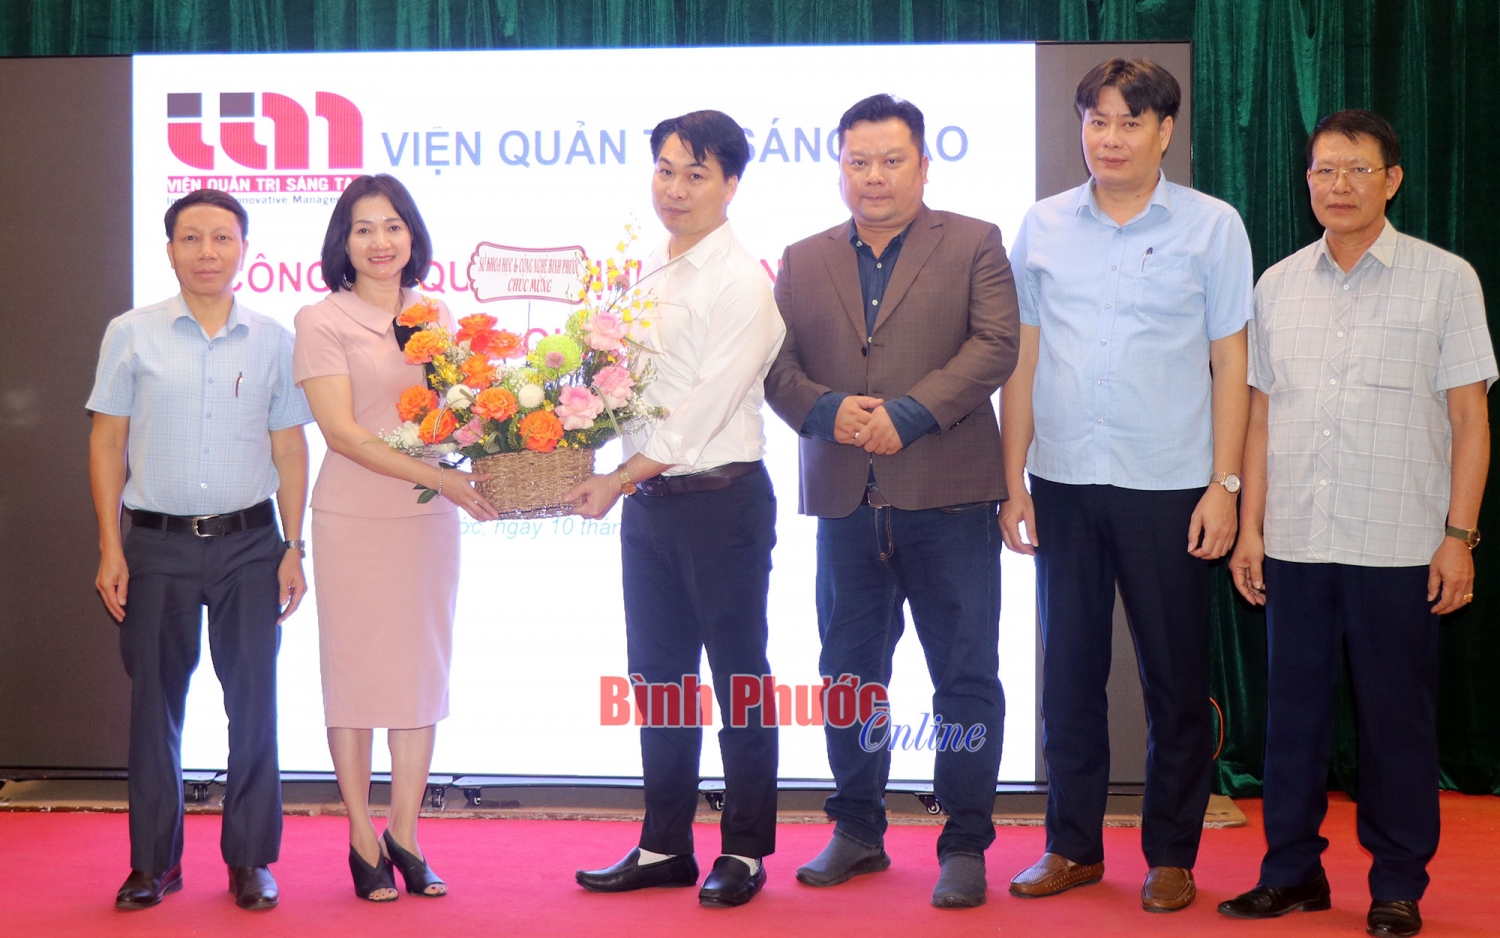 Giám đốc Sở Khoa học và Công nghệ tỉnh Bình Phước Bùi Thị Minh Thúy phát biểu và tặng lẵng hoa chúc mừng Chi nhánh Viện Quản trị sáng tạo tại Bình Phước được thành lập